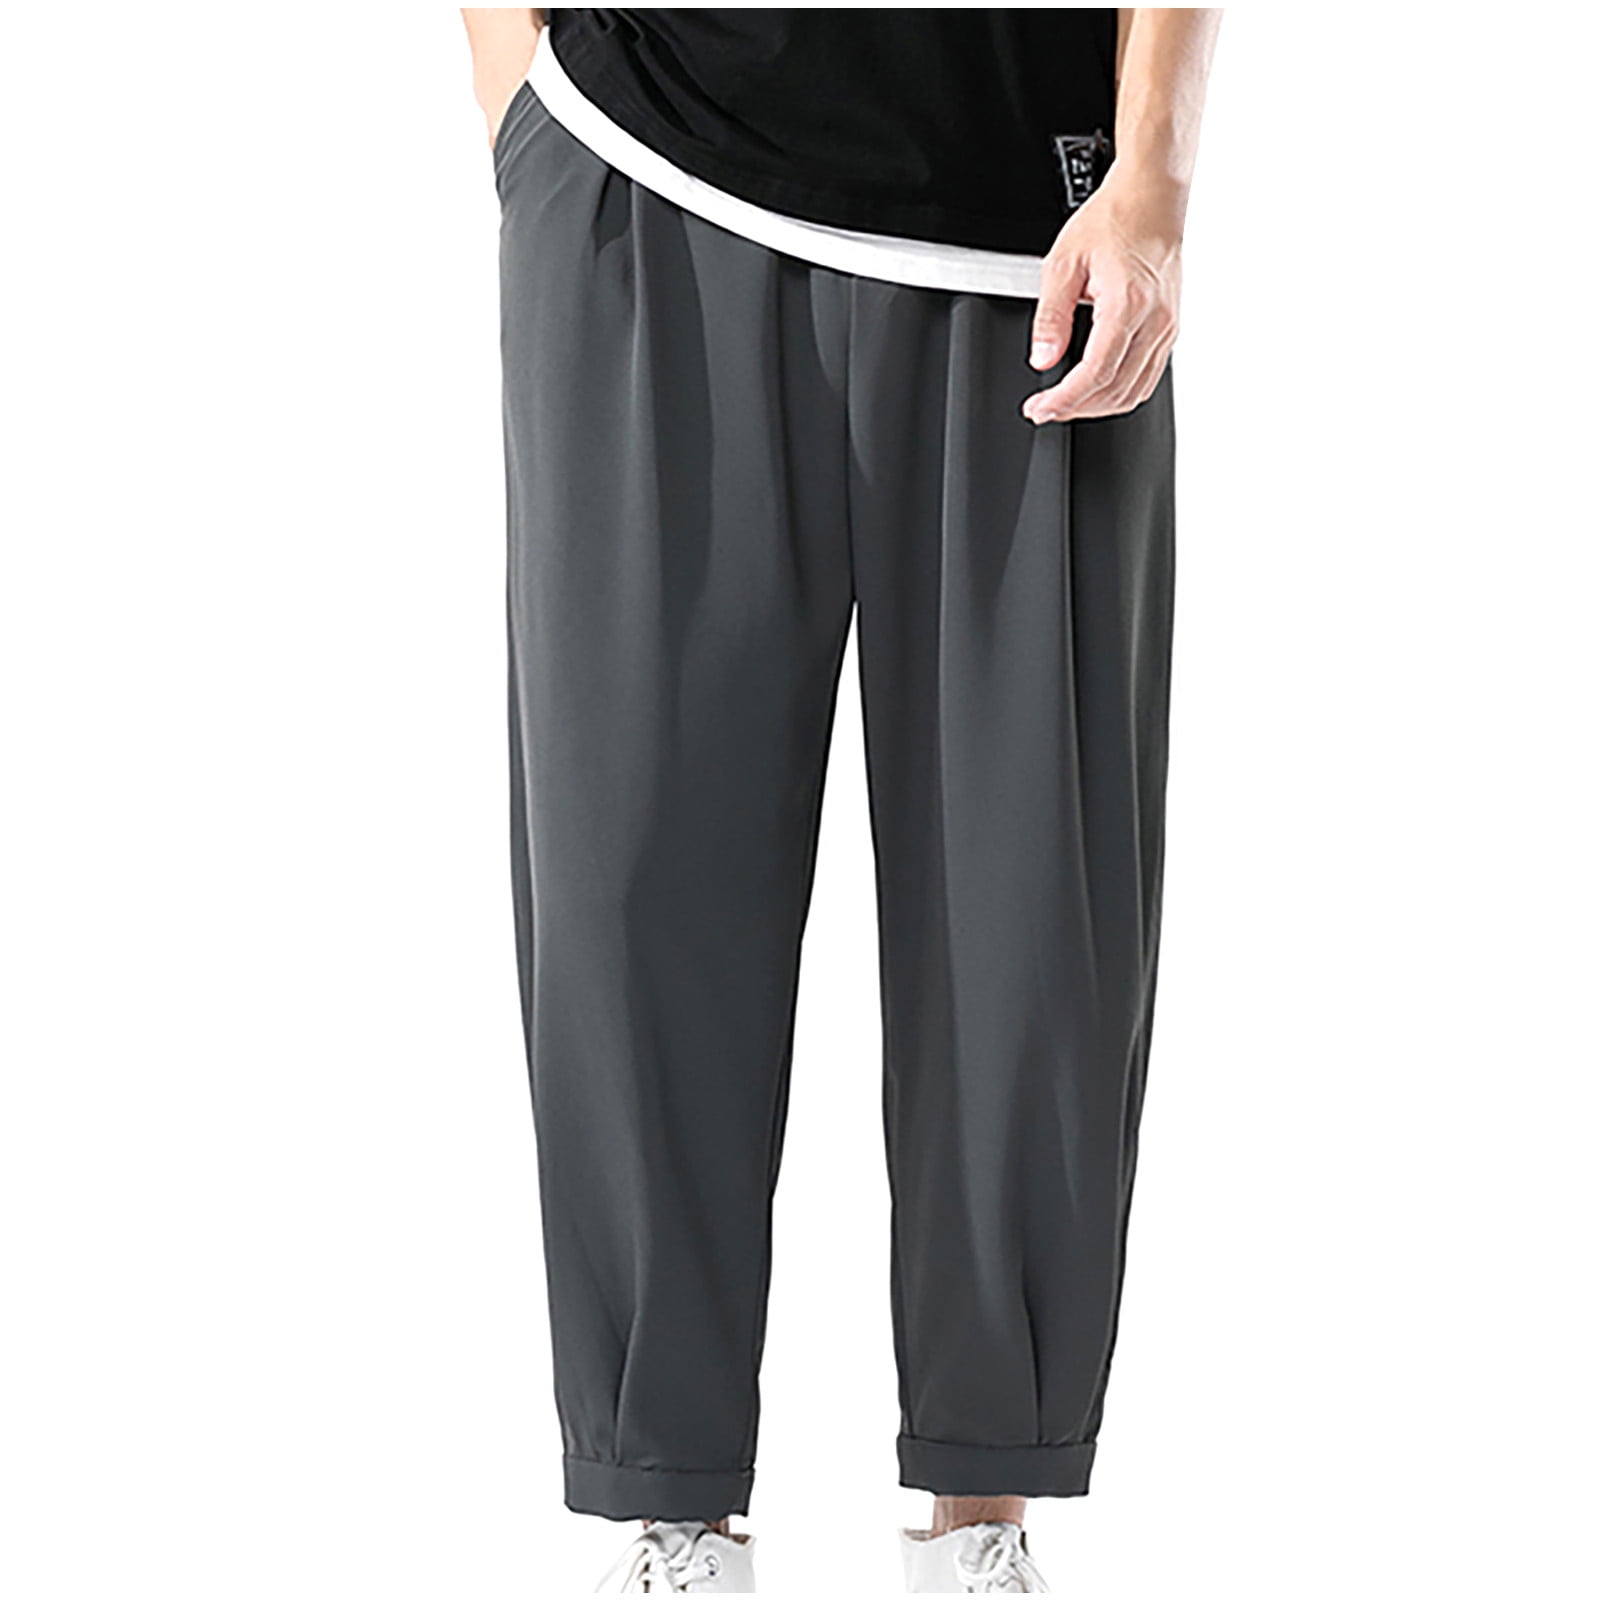 Men's Casual Cotton Sweatpants Ankle-Length Elastic Waist Loose Fit Lounge  Pants Trendy Solid Color Sports Pants 